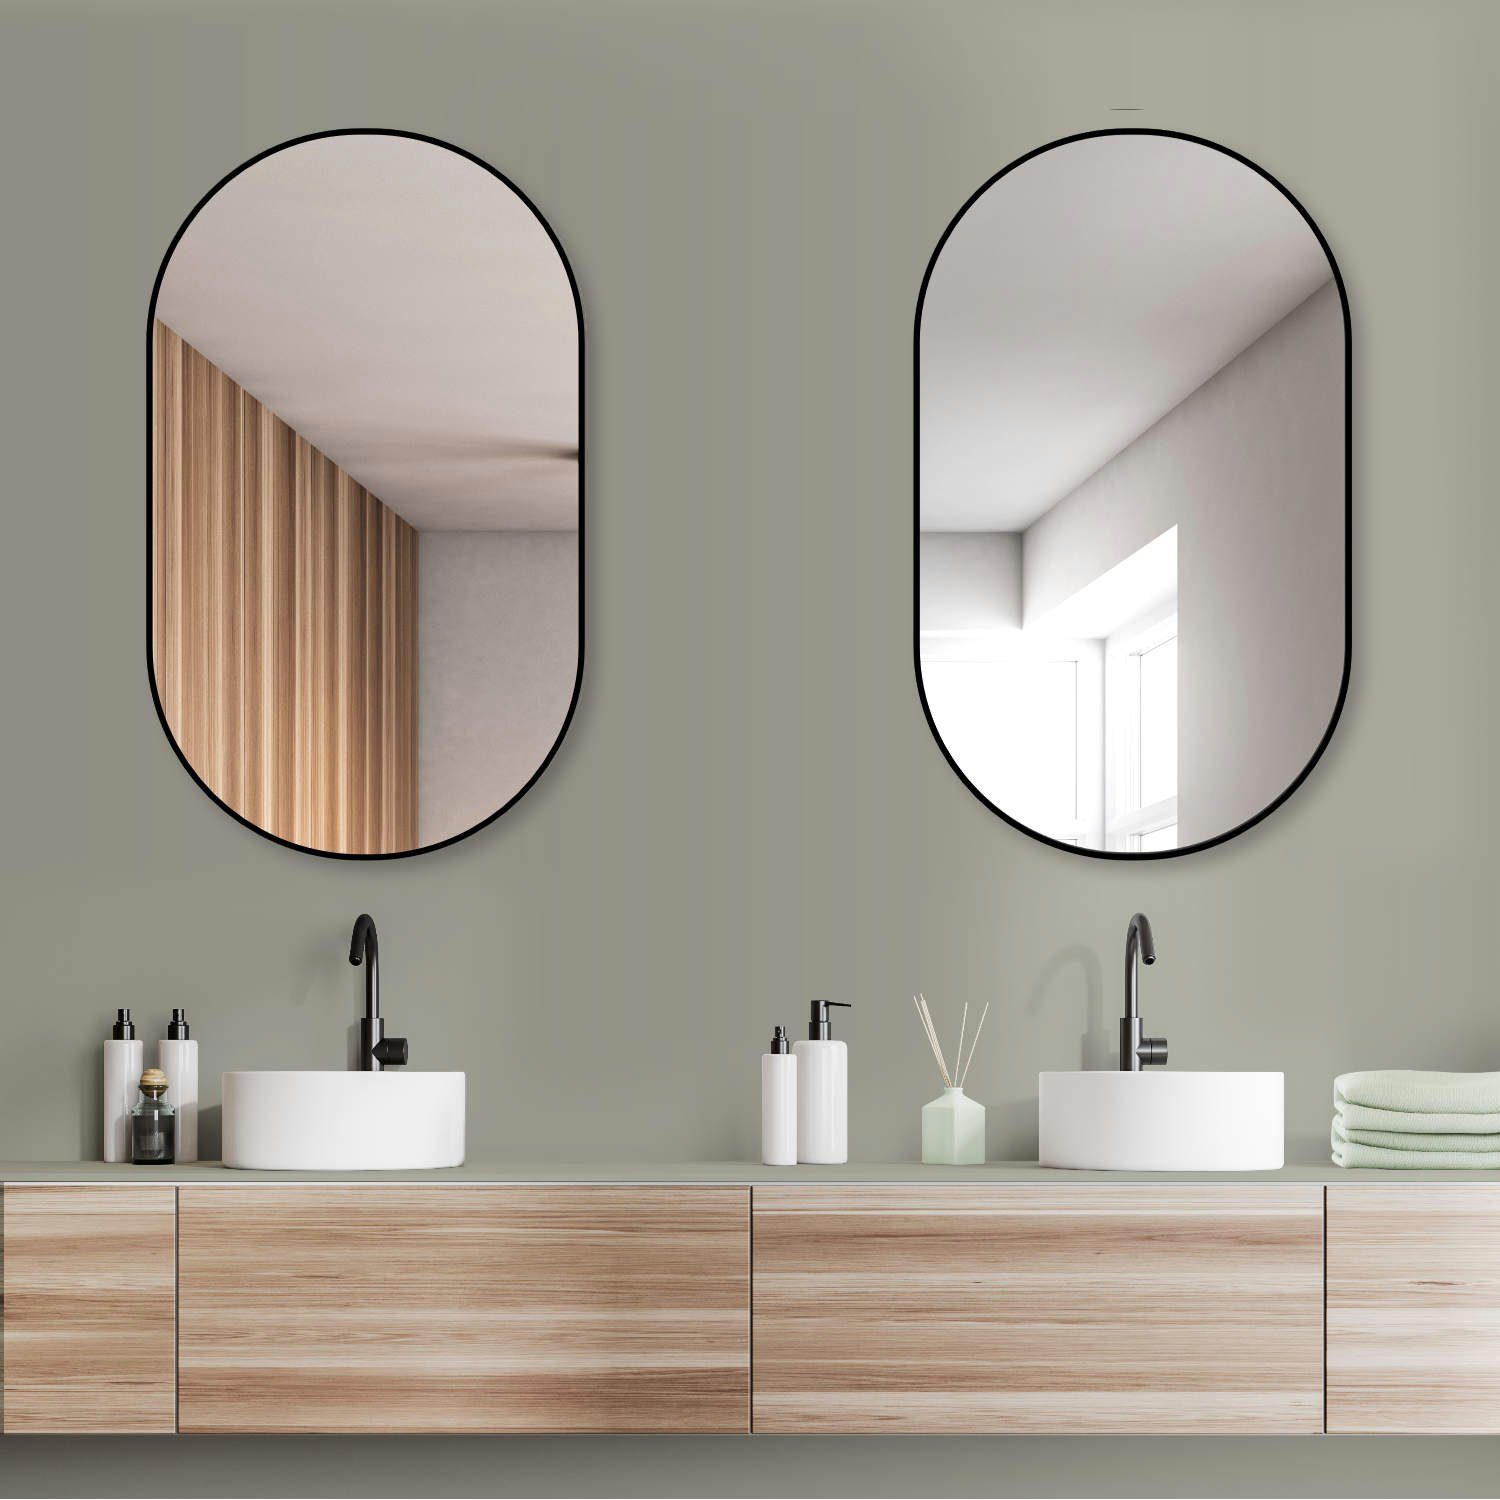 HOKO Dekospiegel Design Modern Kosmetikspiegel, Wandspiegel oval Montage. QUER mit HOCH und 4mm Aluminium-Wandhalterung mit Flurspiegel, Rahmen. (Badezimmerspiegel, und Schminkspiegel. Glass. Rahmen)